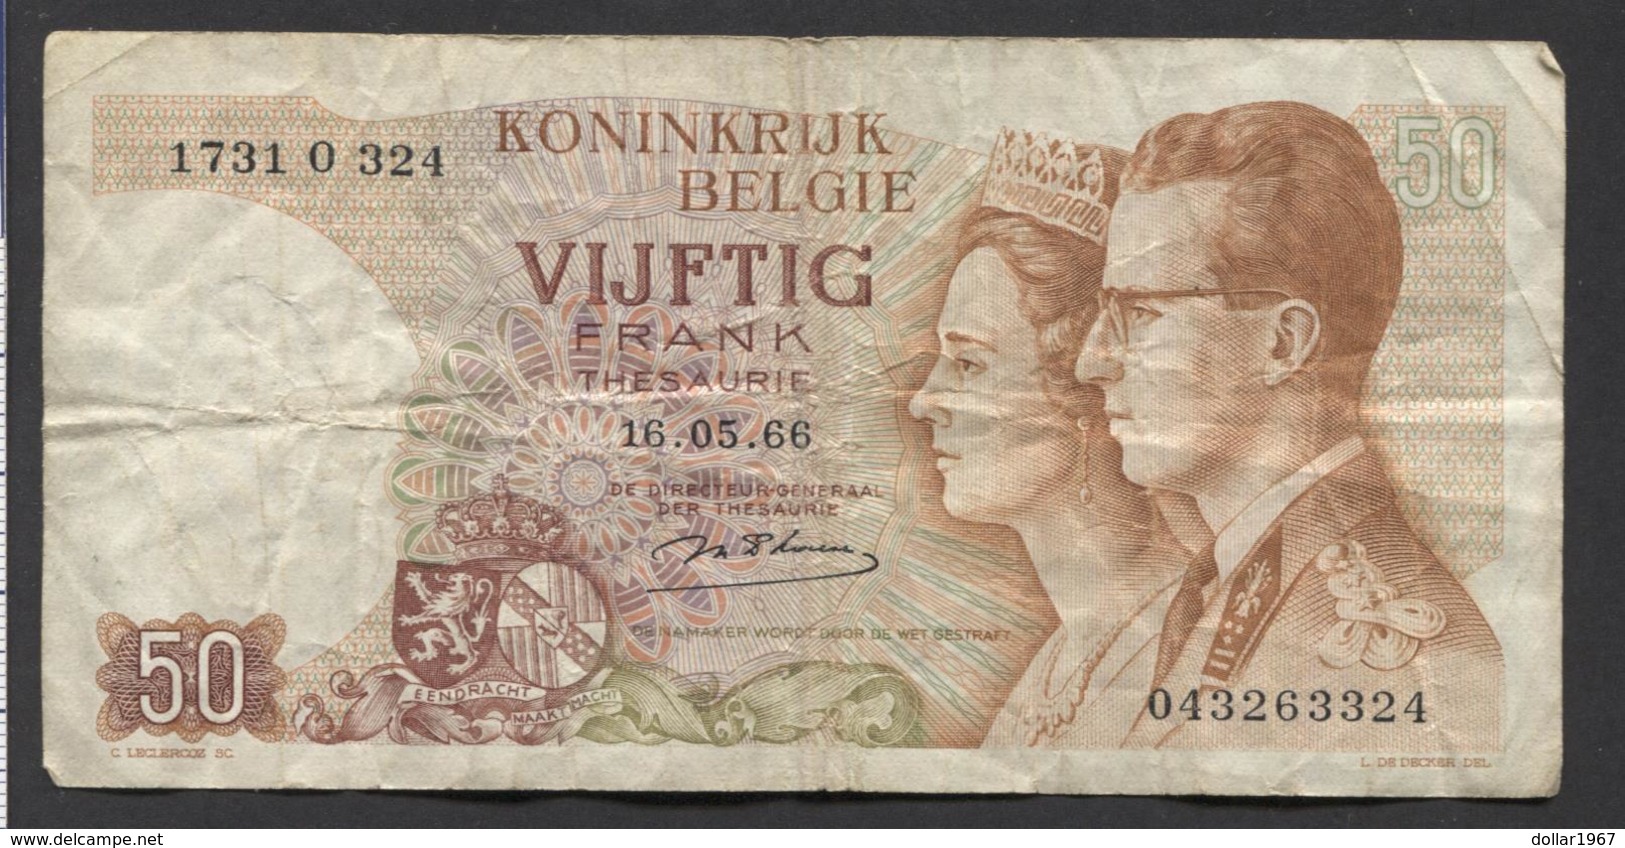 België 50 Frank 14-5- 1966 -NO: 1731 O 324 - 50 Francos